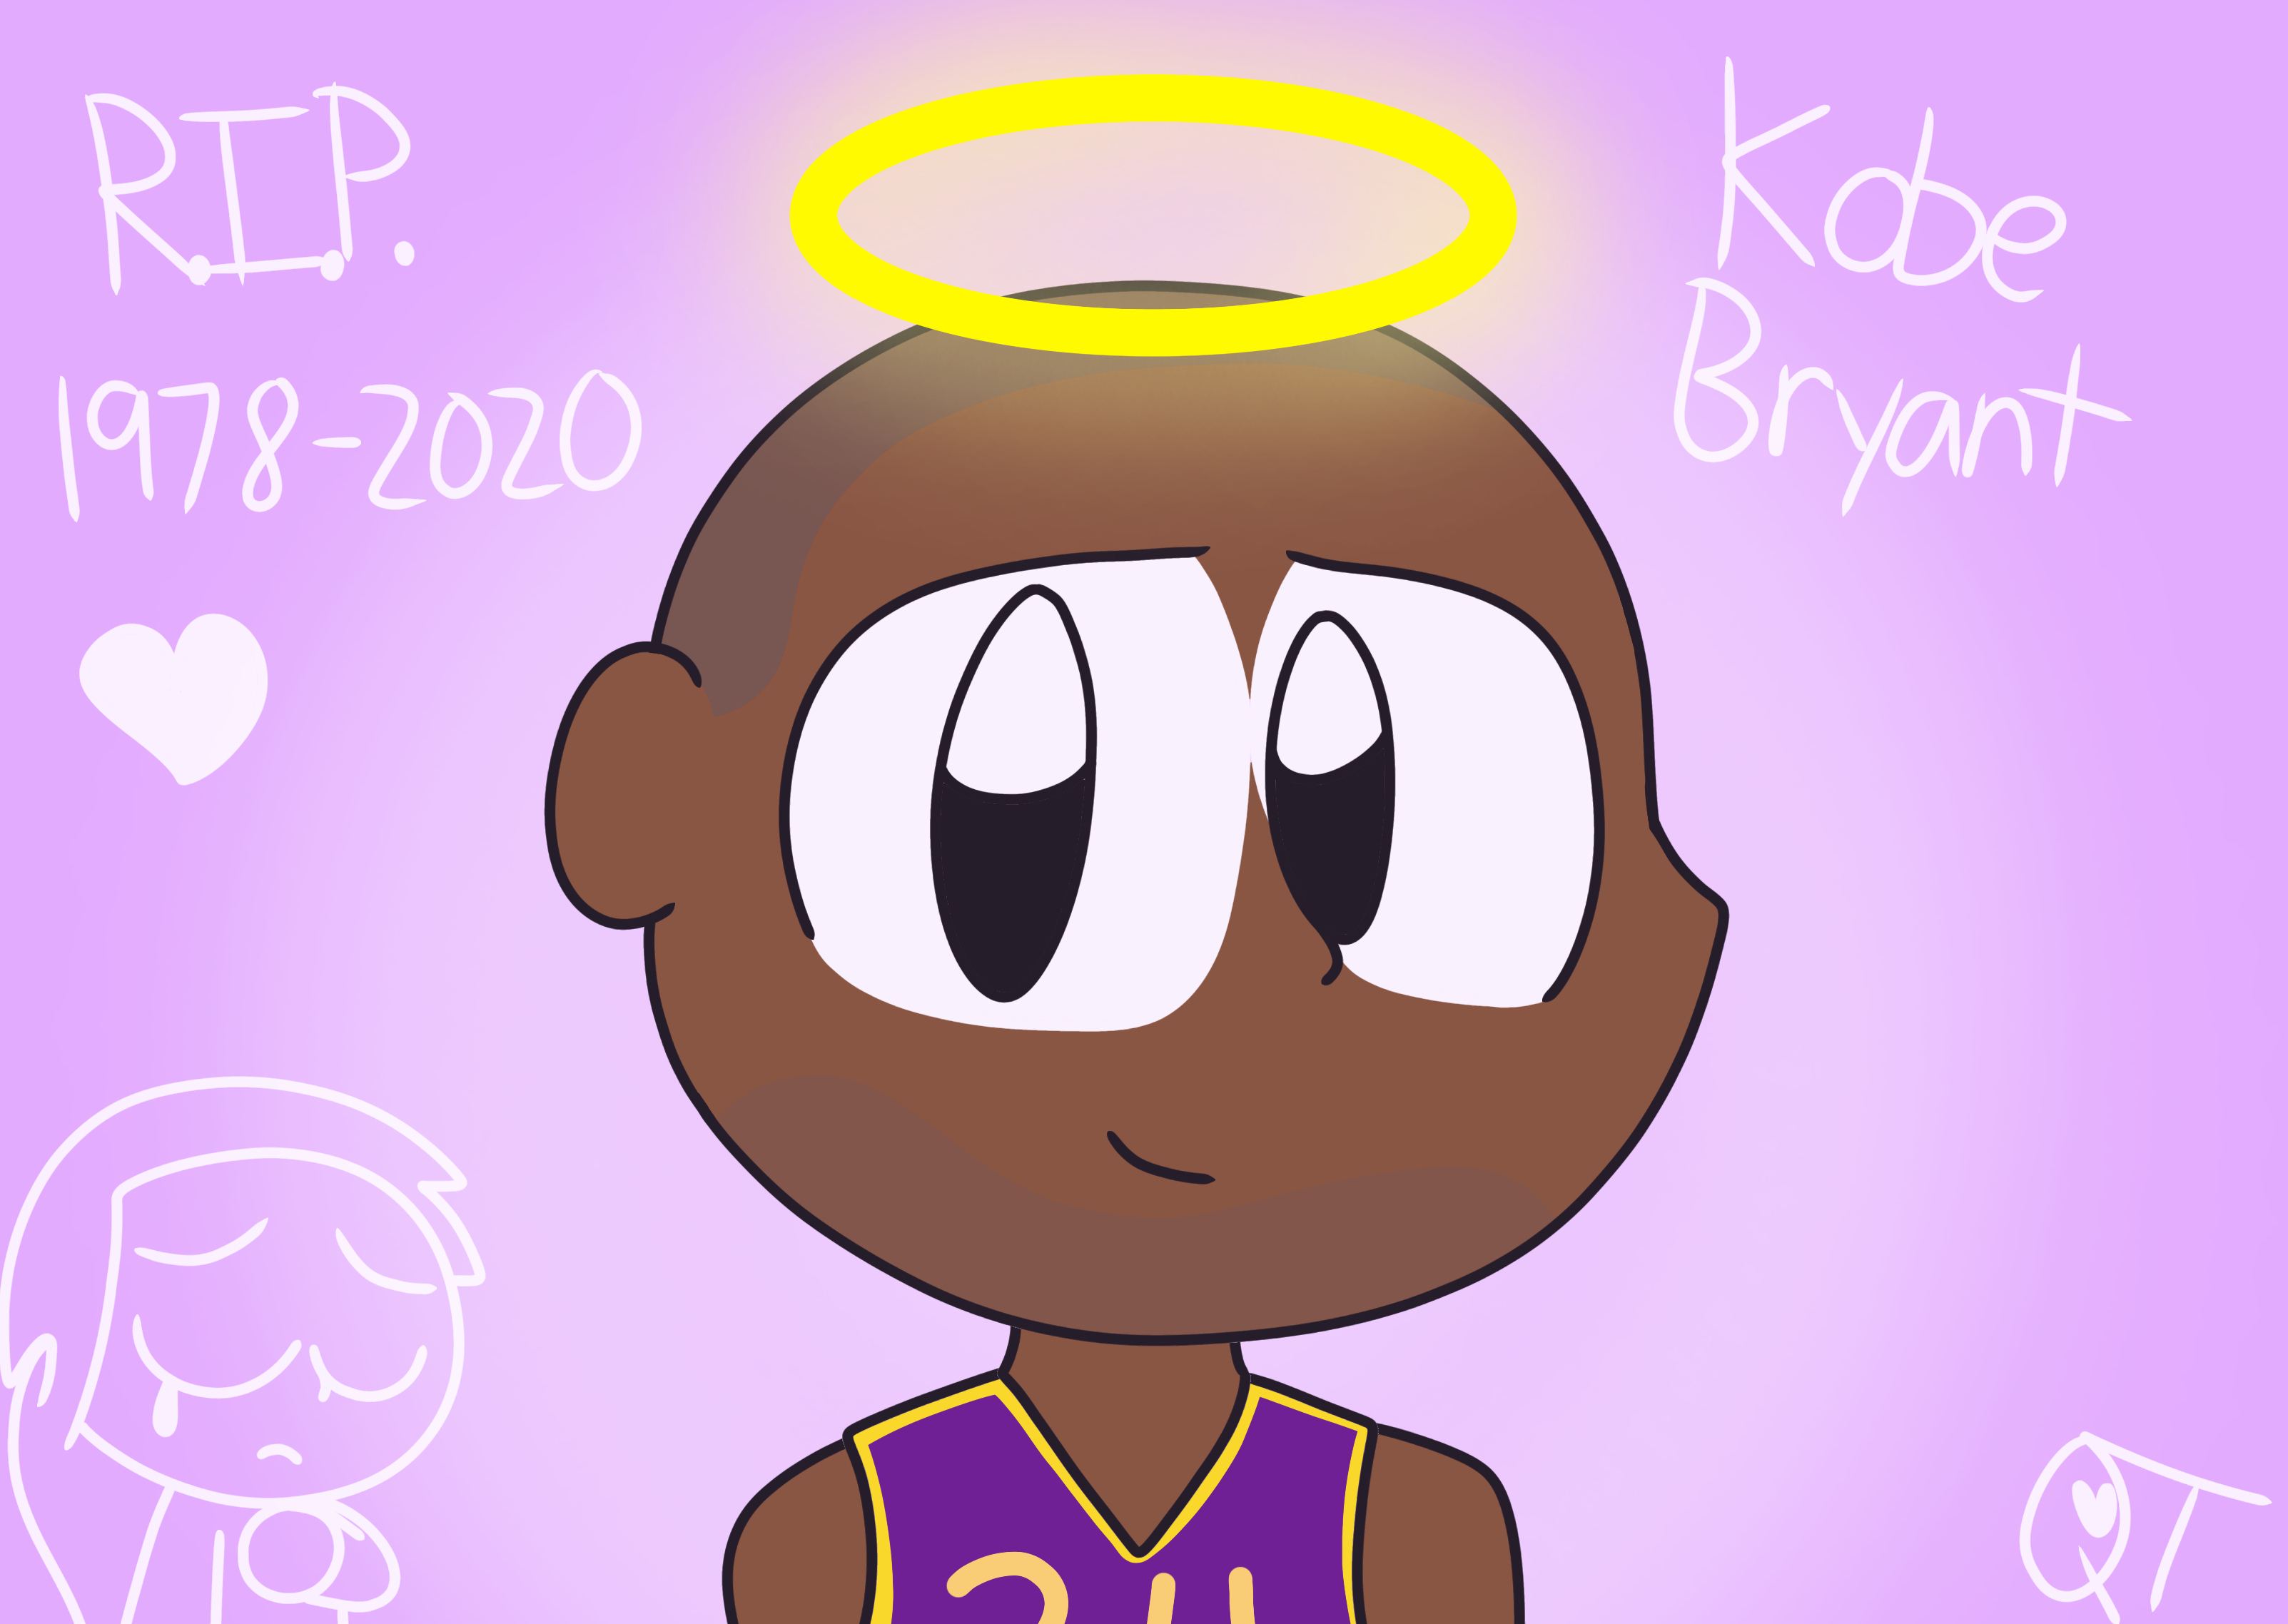 Kobe Bryant- Icon by whitewizardlotr on DeviantArt